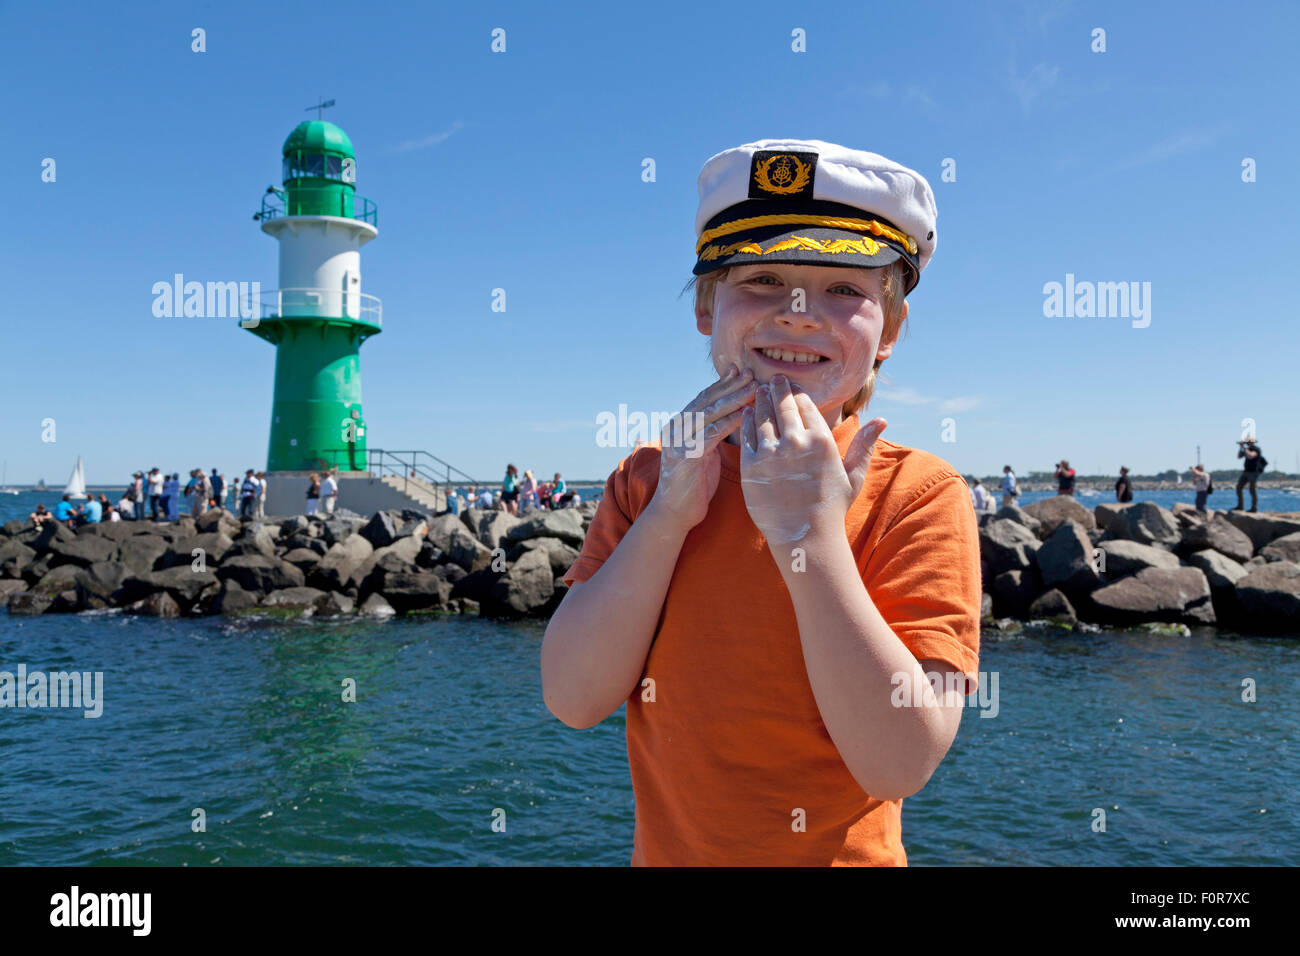 Jeune capitaine appliquez un écran solaire à son visage en face du phare, Rostock, Rostock, Mecklembourg-Poméranie occidentale, Allemagne Banque D'Images